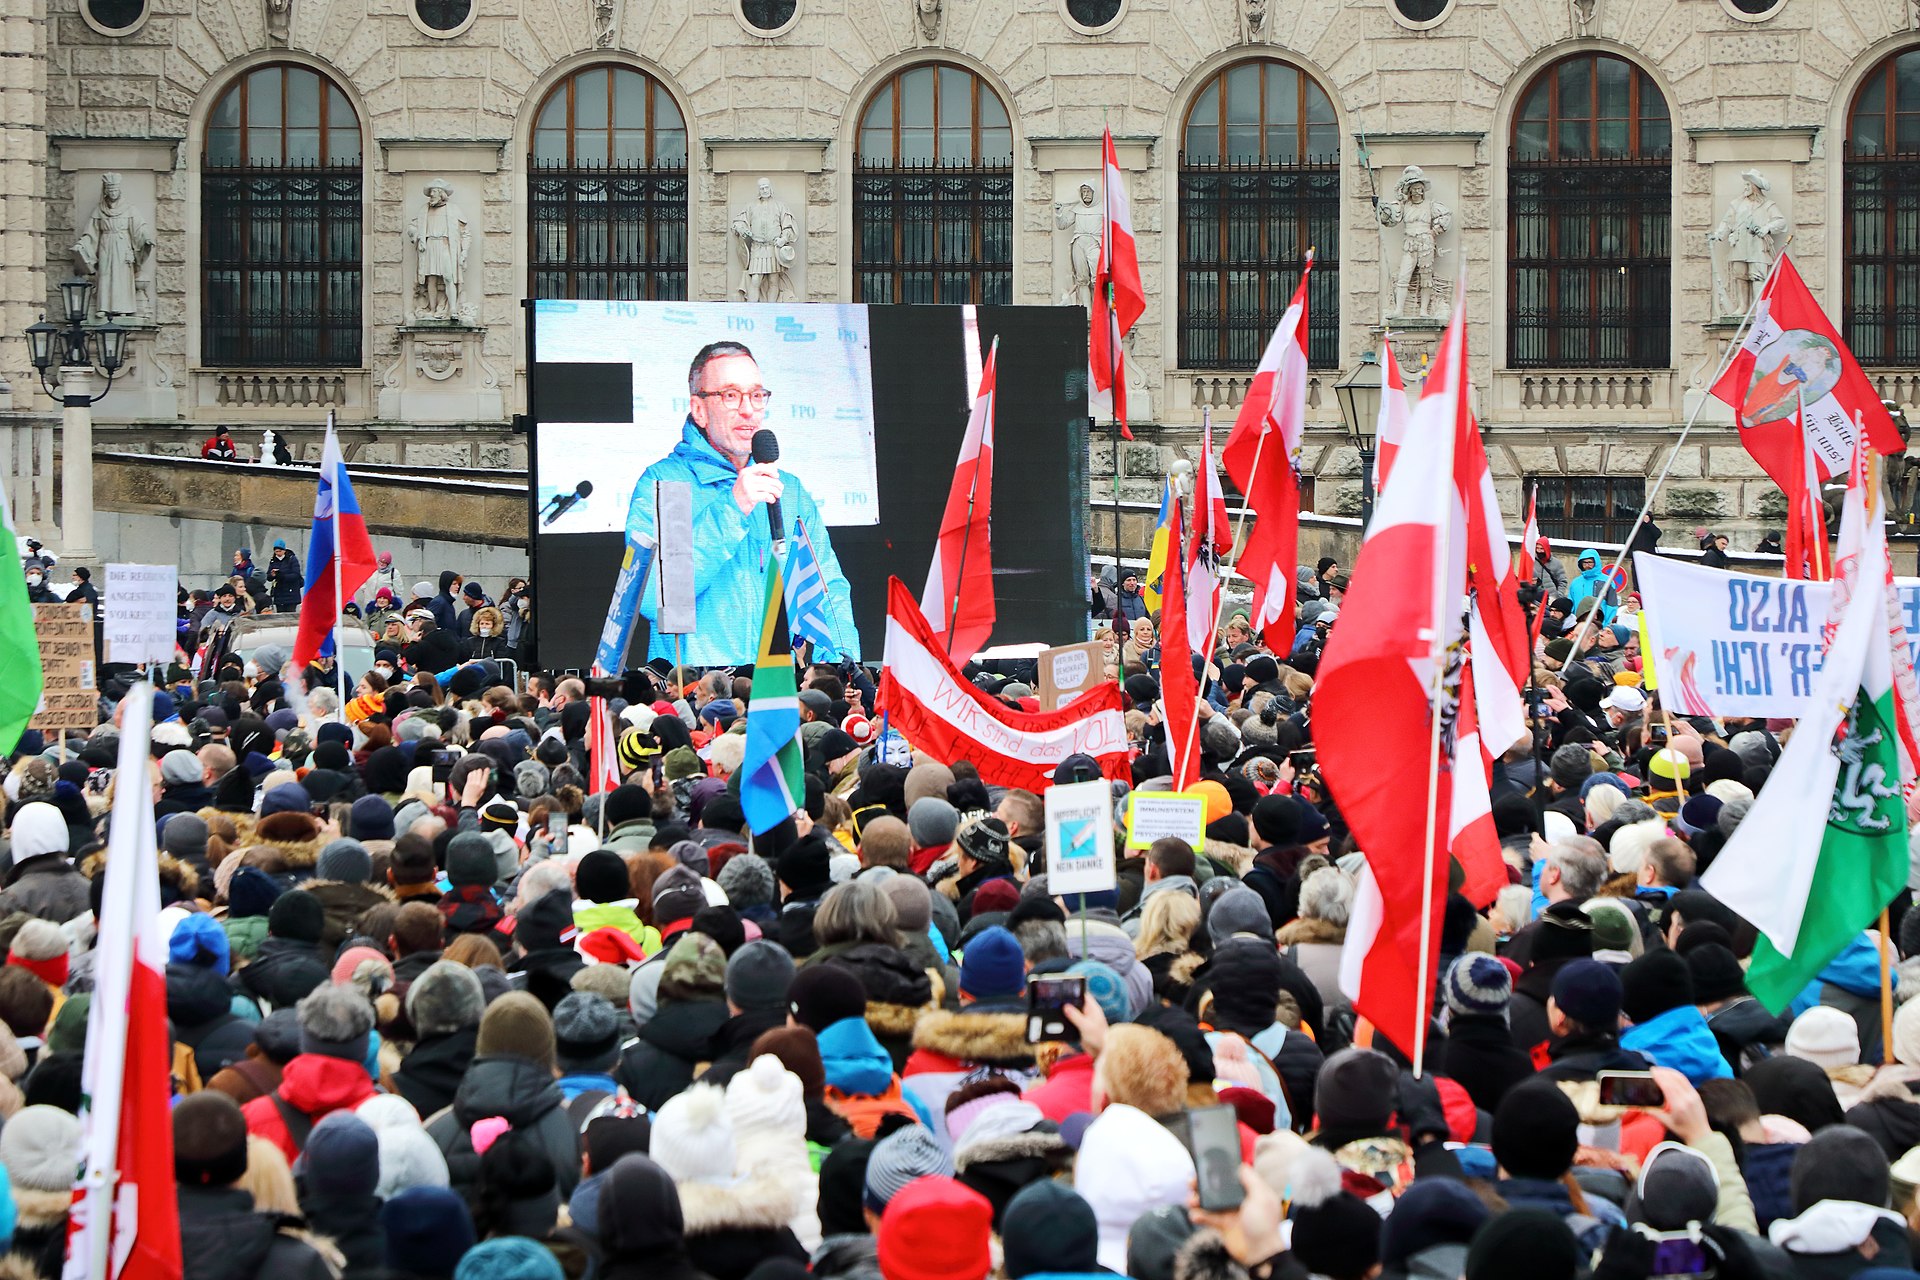 FPÖ leader Herbert Kickl at an anti-lockdown demonstration, Vienna, December 11, 2021.